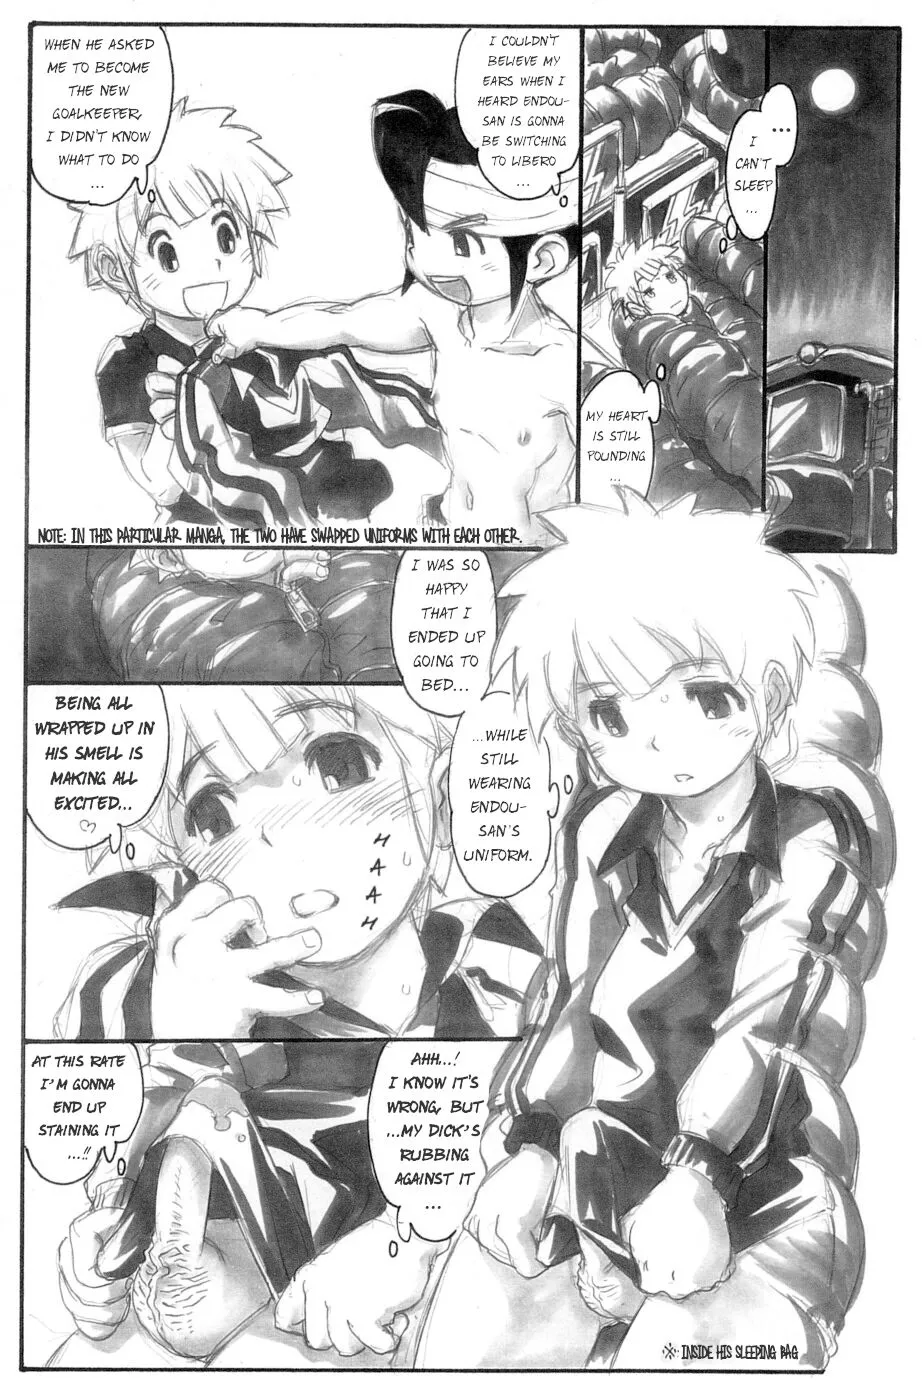 922px x 1383px - Slave Captain Brave Rookie - English Hentai Manga (Page 3)